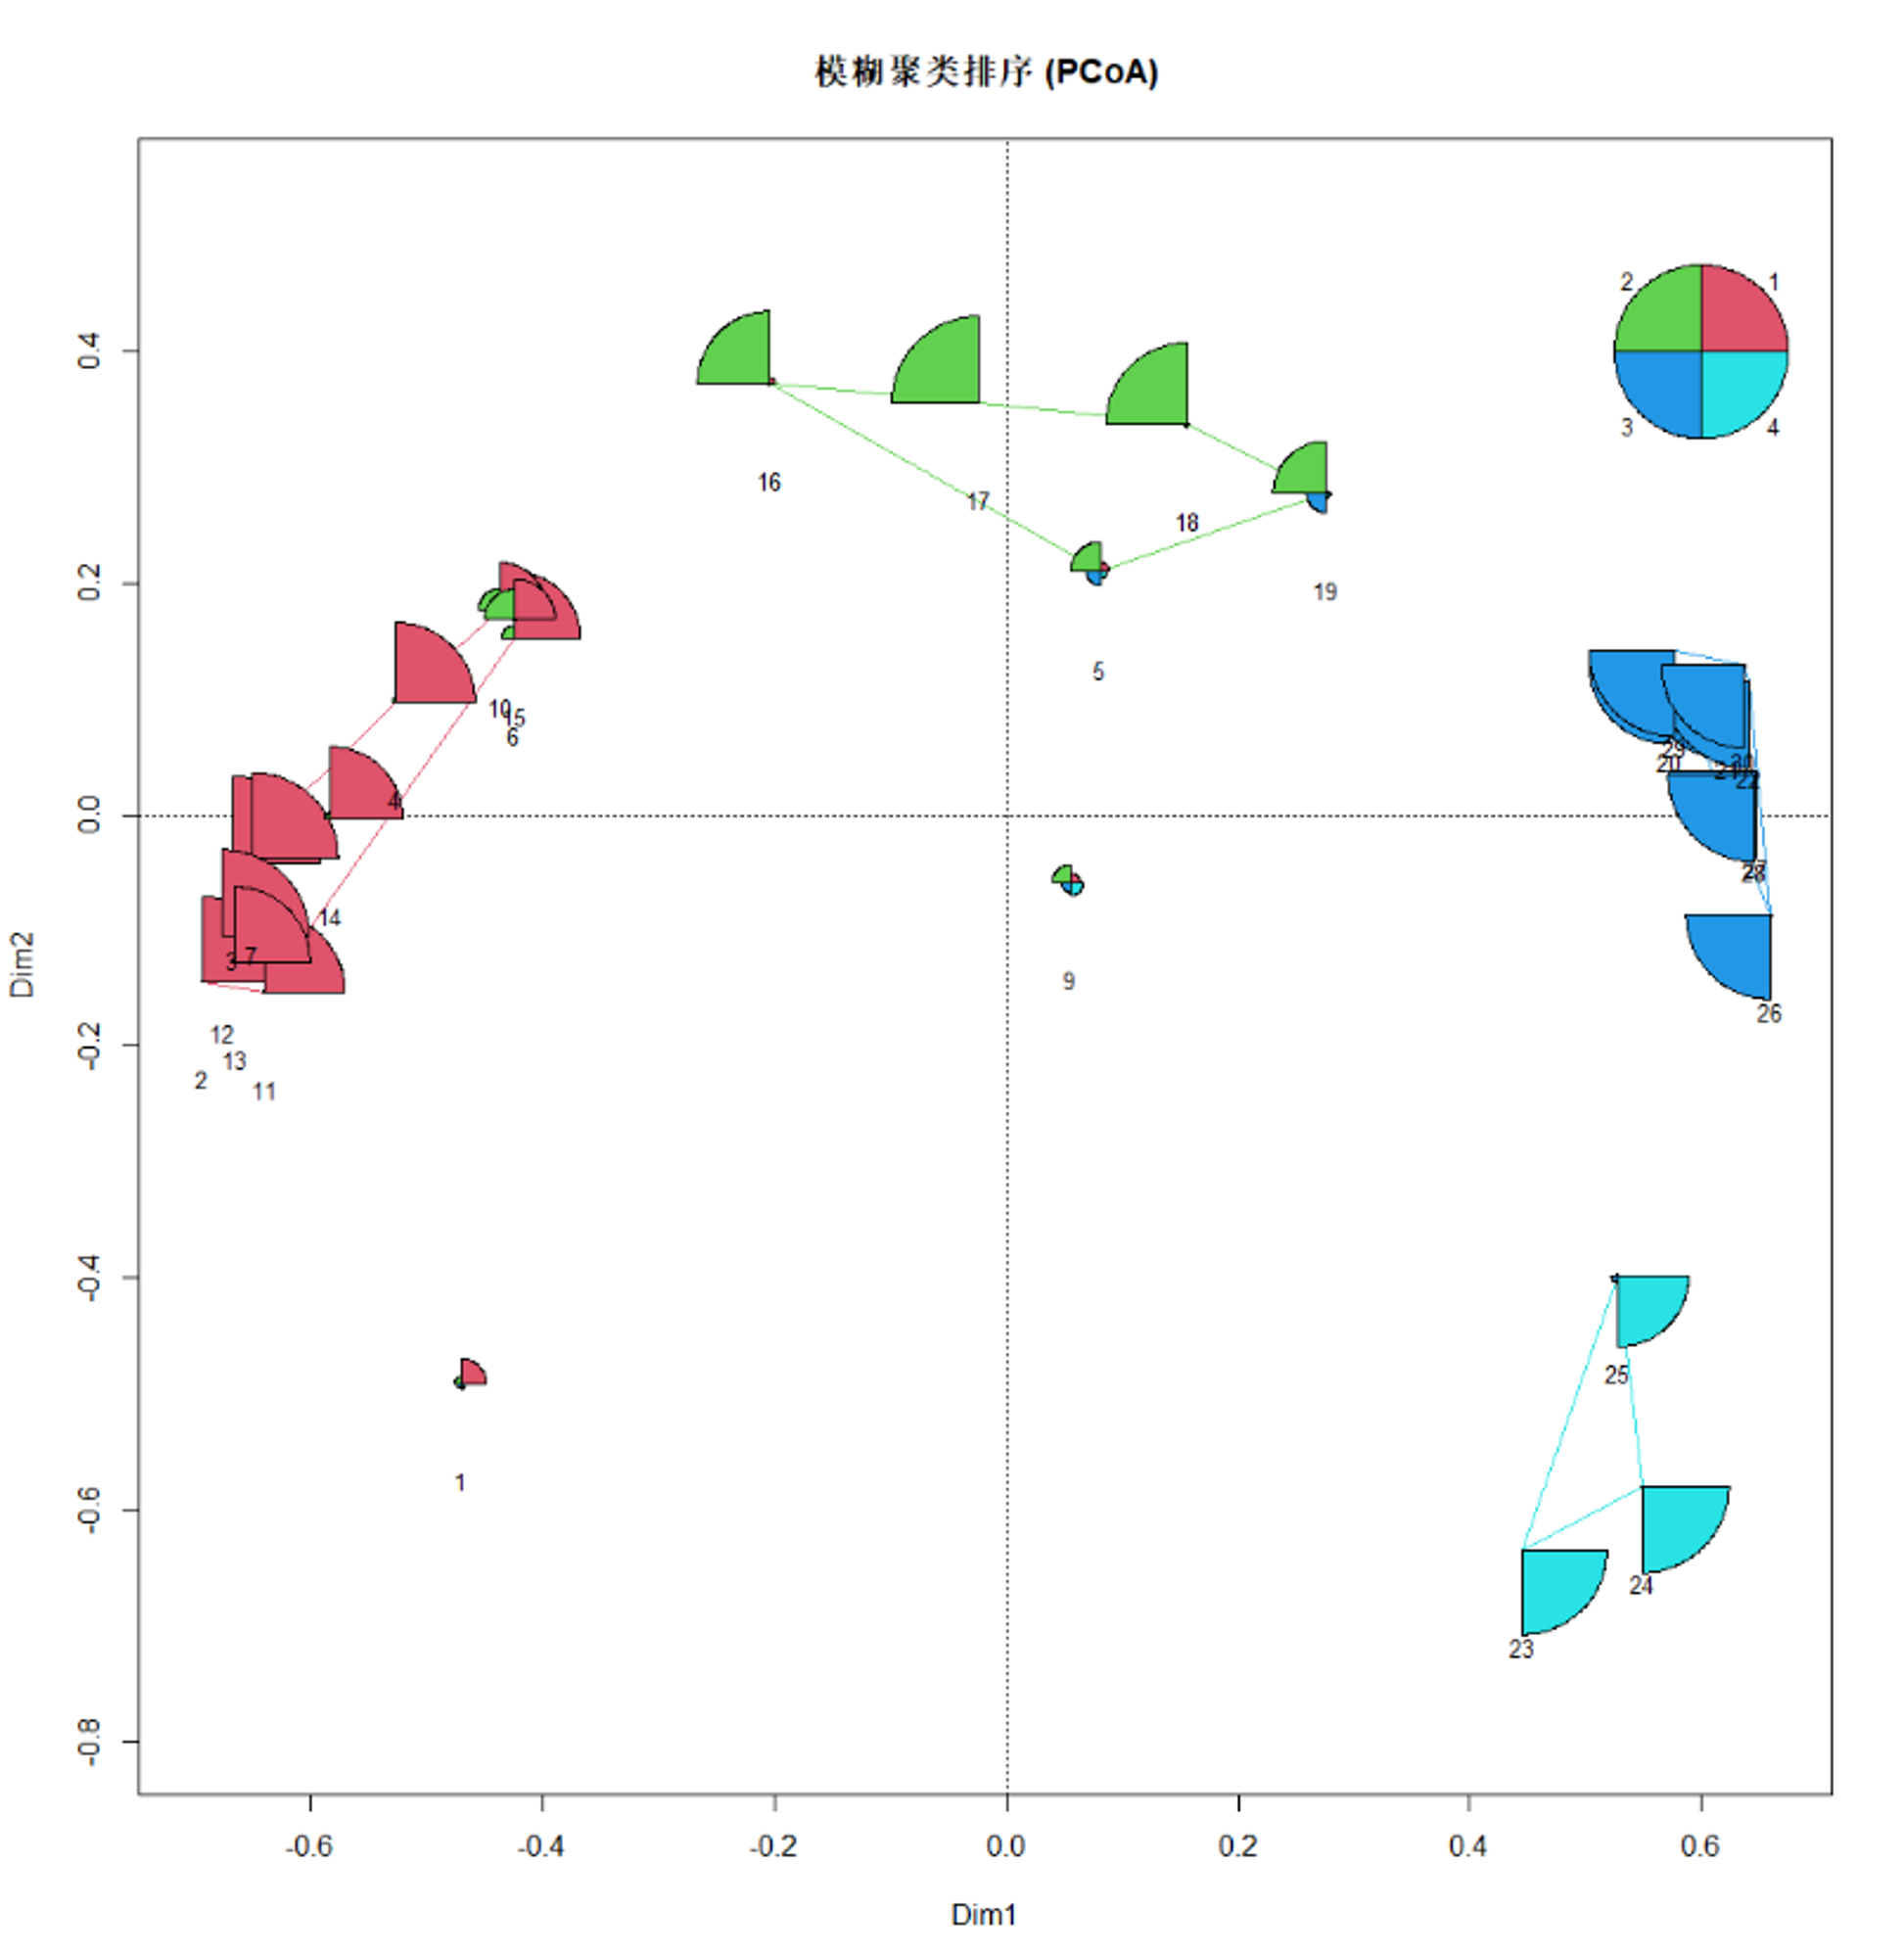 鱼类数据的噪声聚类排序图，样方1和9与噪声聚类簇（N）的关系与其他真正聚类簇更强